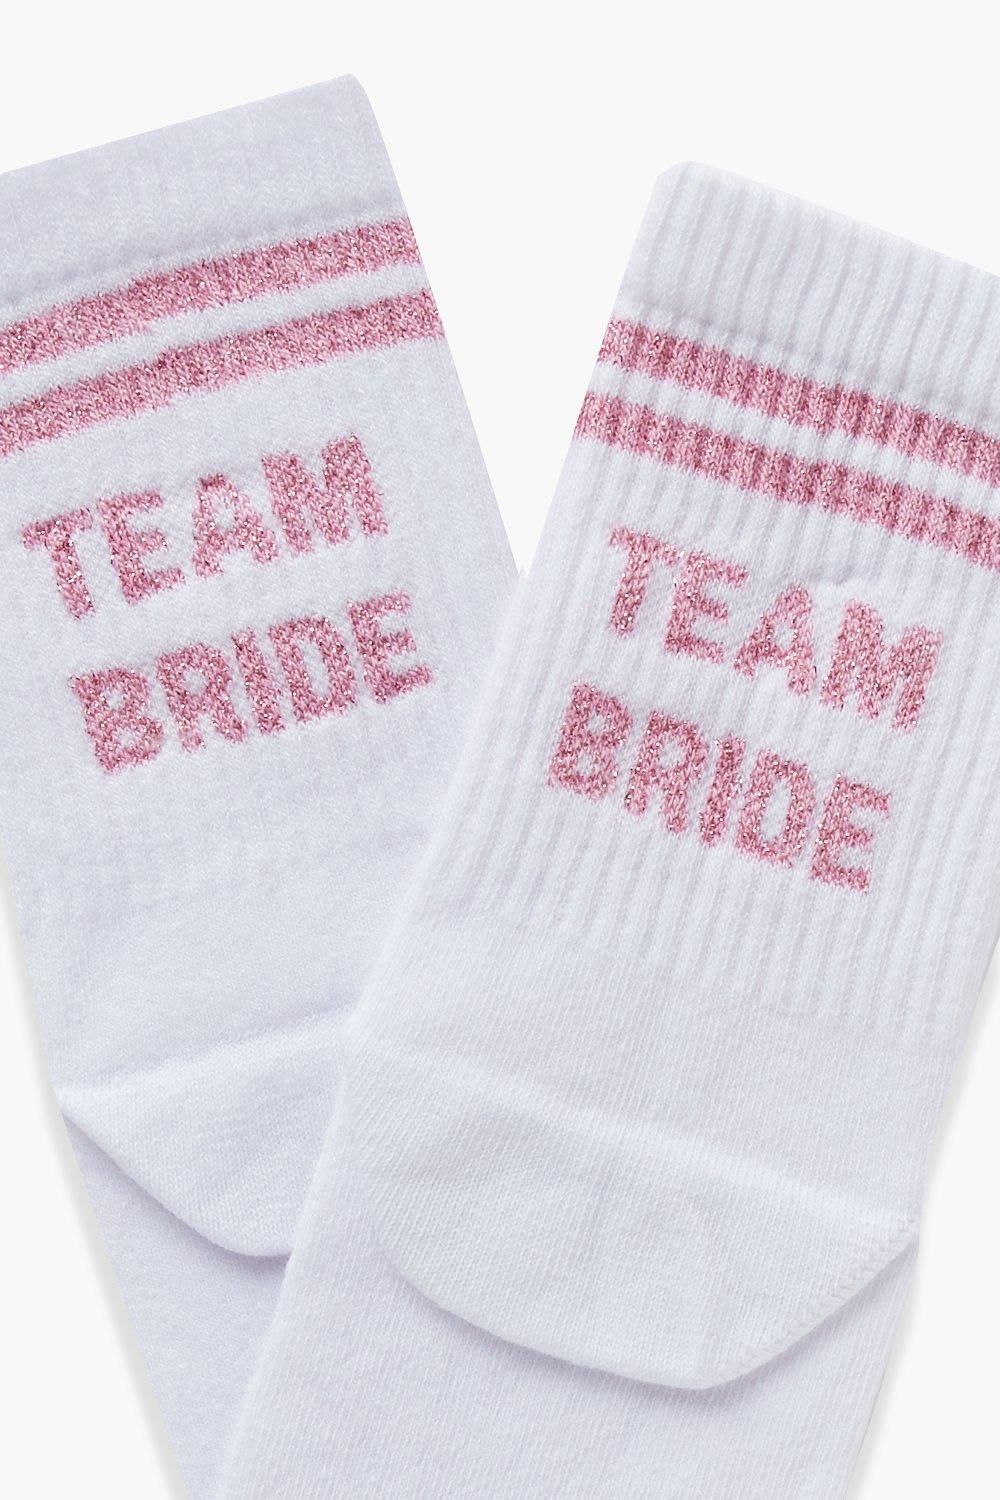 Team Bride Slogan Sock | Boohoo.com (US & CA)